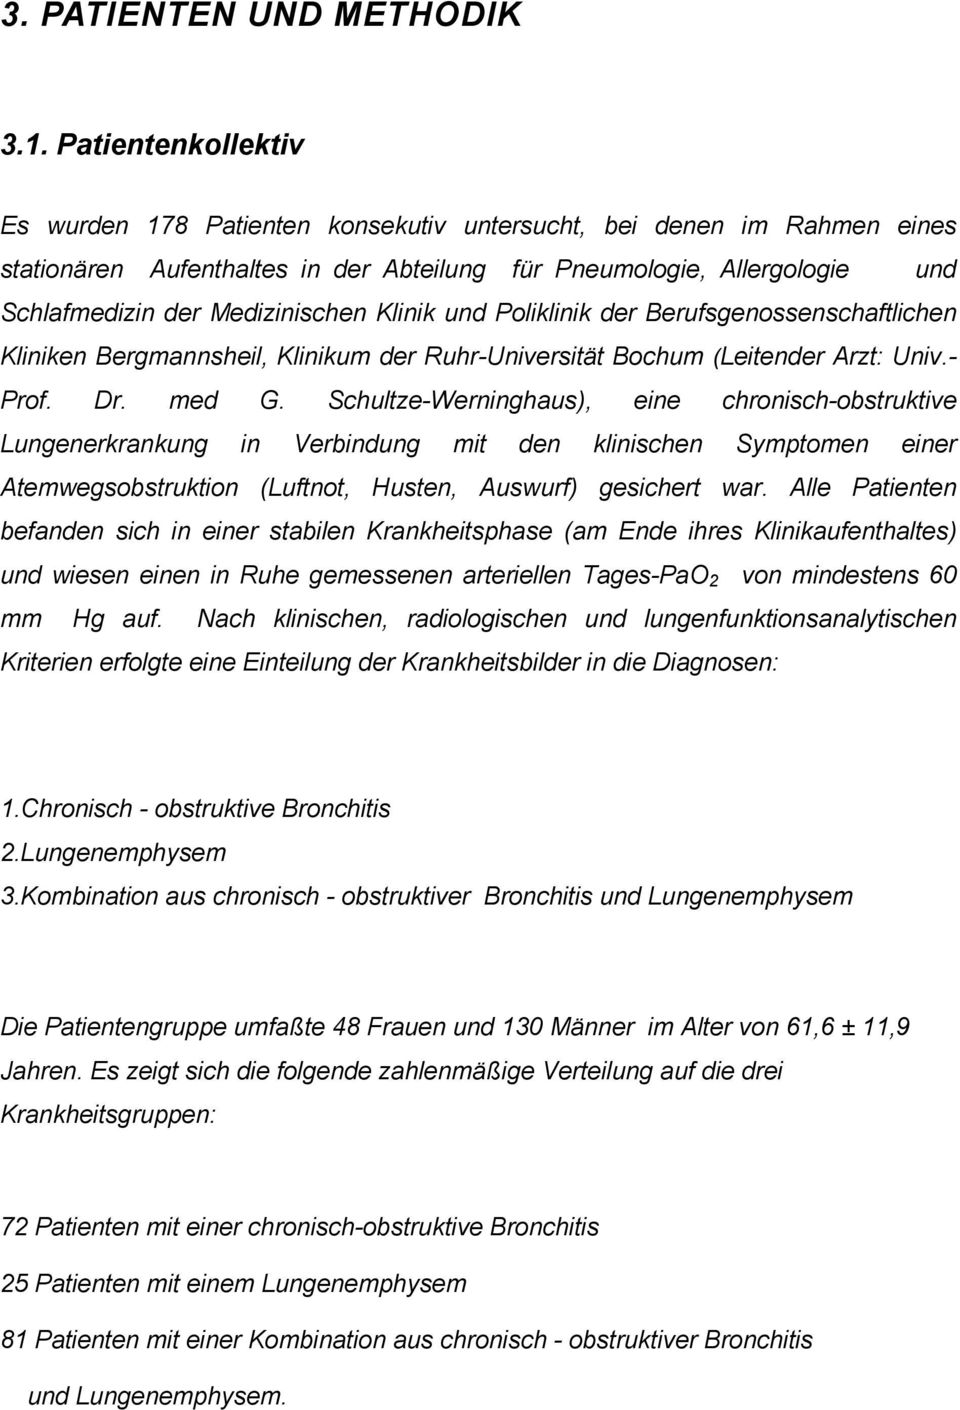 Klinik und Poliklinik der Berufsgenossenschaftlichen Kliniken Bergmannsheil, Klinikum der Ruhr-Universität Bochum (Leitender Arzt: Univ.- Prof. Dr. med G.